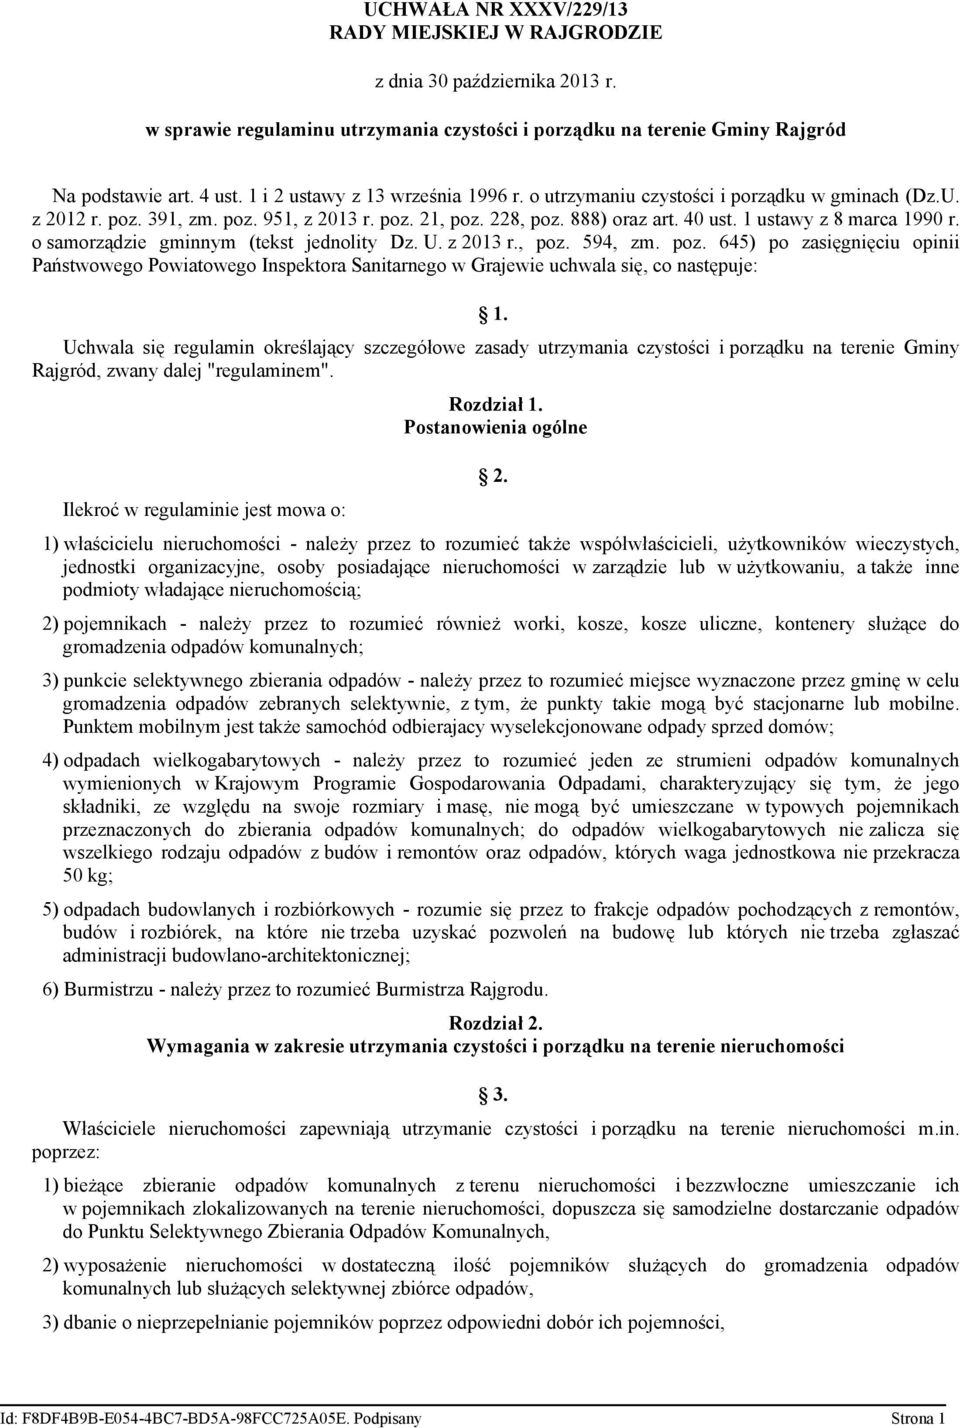 1 ustawy z 8 marca 1990 r. o samorządzie gminnym (tekst jednolity Dz. U. z 2013 r., poz.